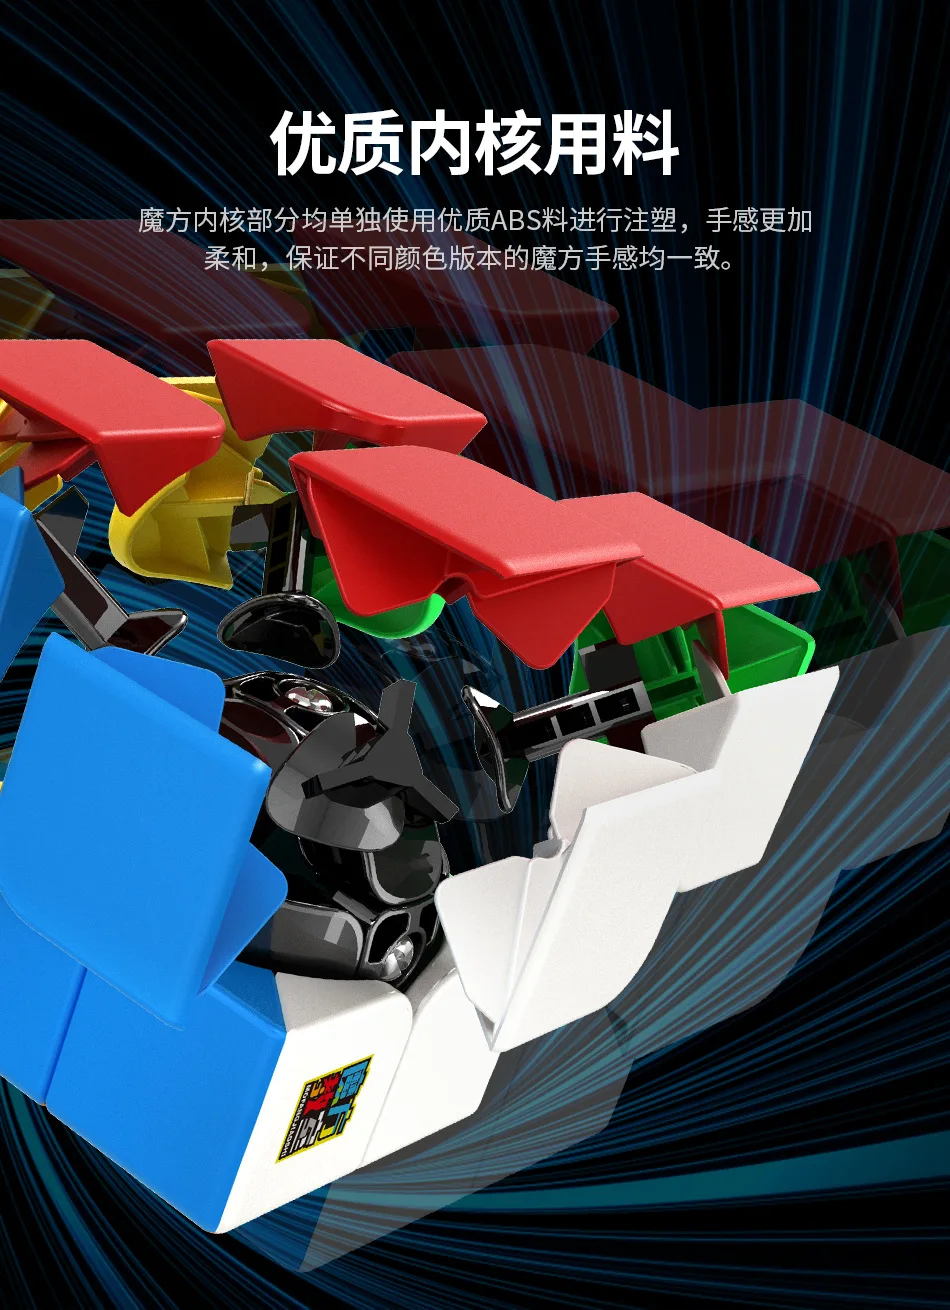 MOYU Meilong Magic Professional 2x2x2 волшебный куб головоломка на скорость 2x2 куб Развивающие игрушки Подарки cubo magico